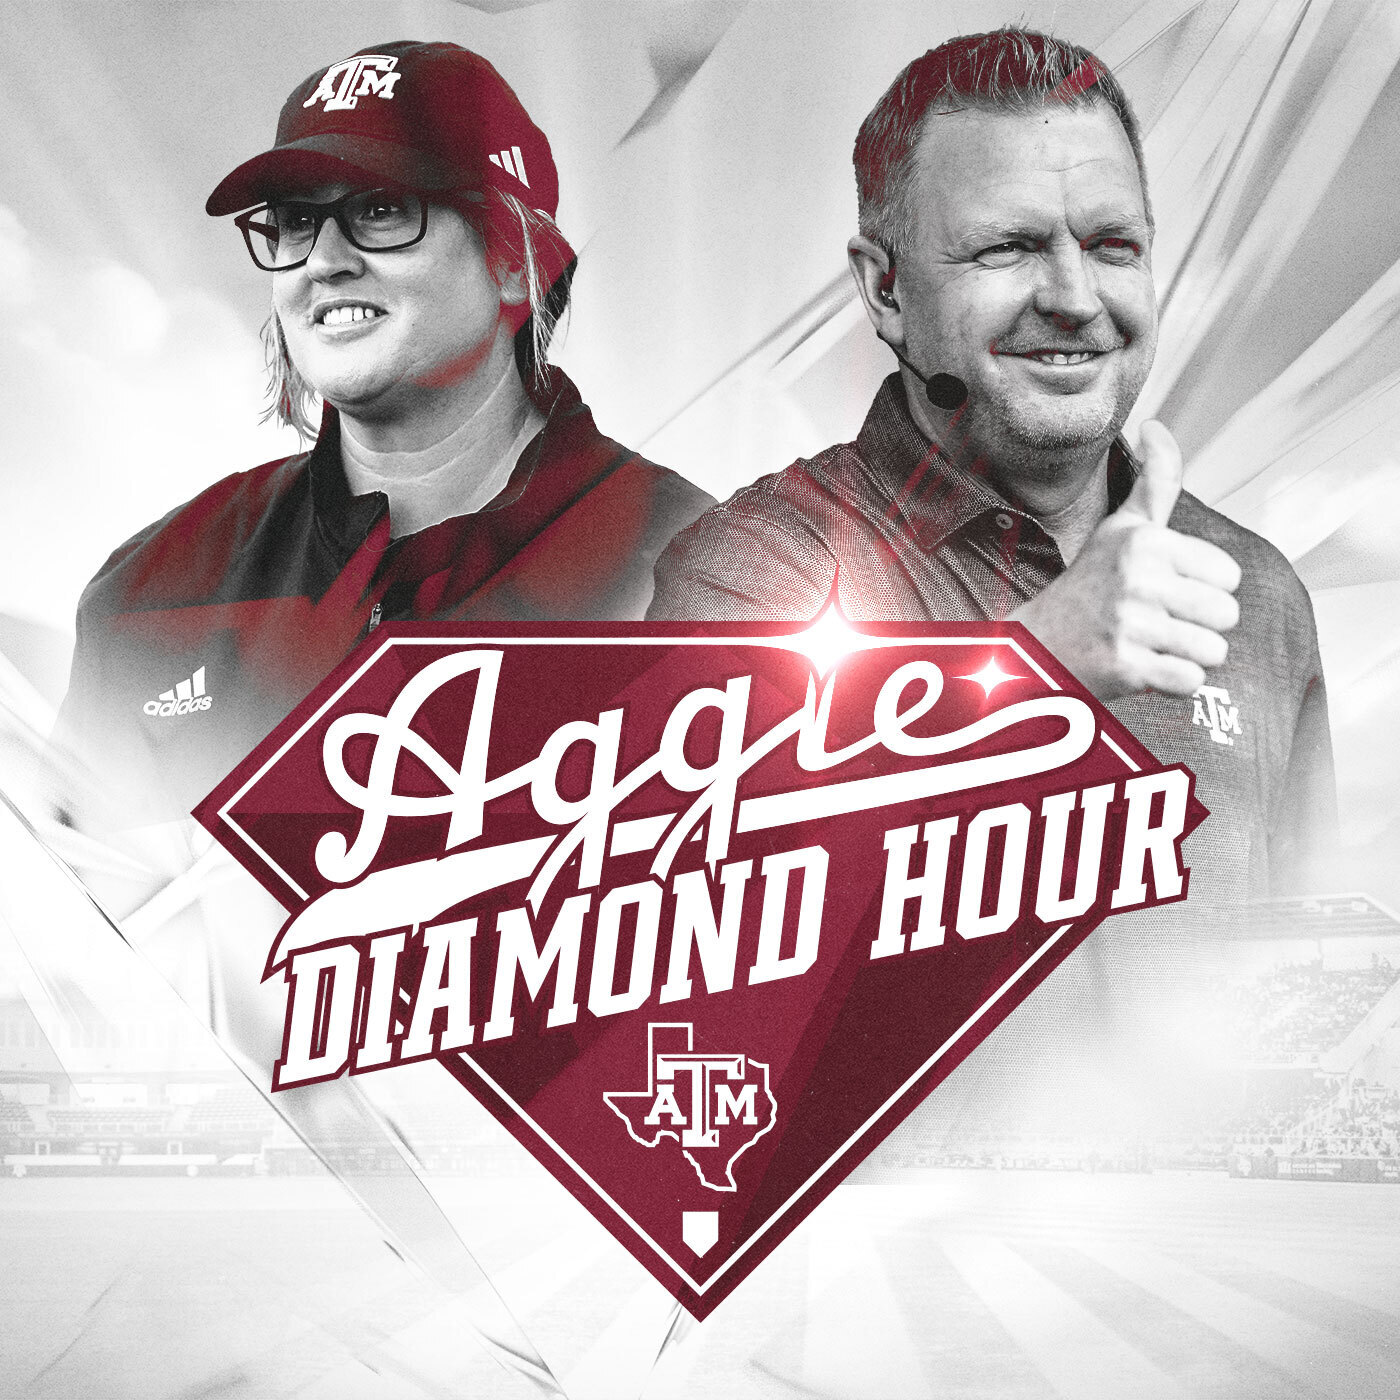 The Aggie Diamond Hour